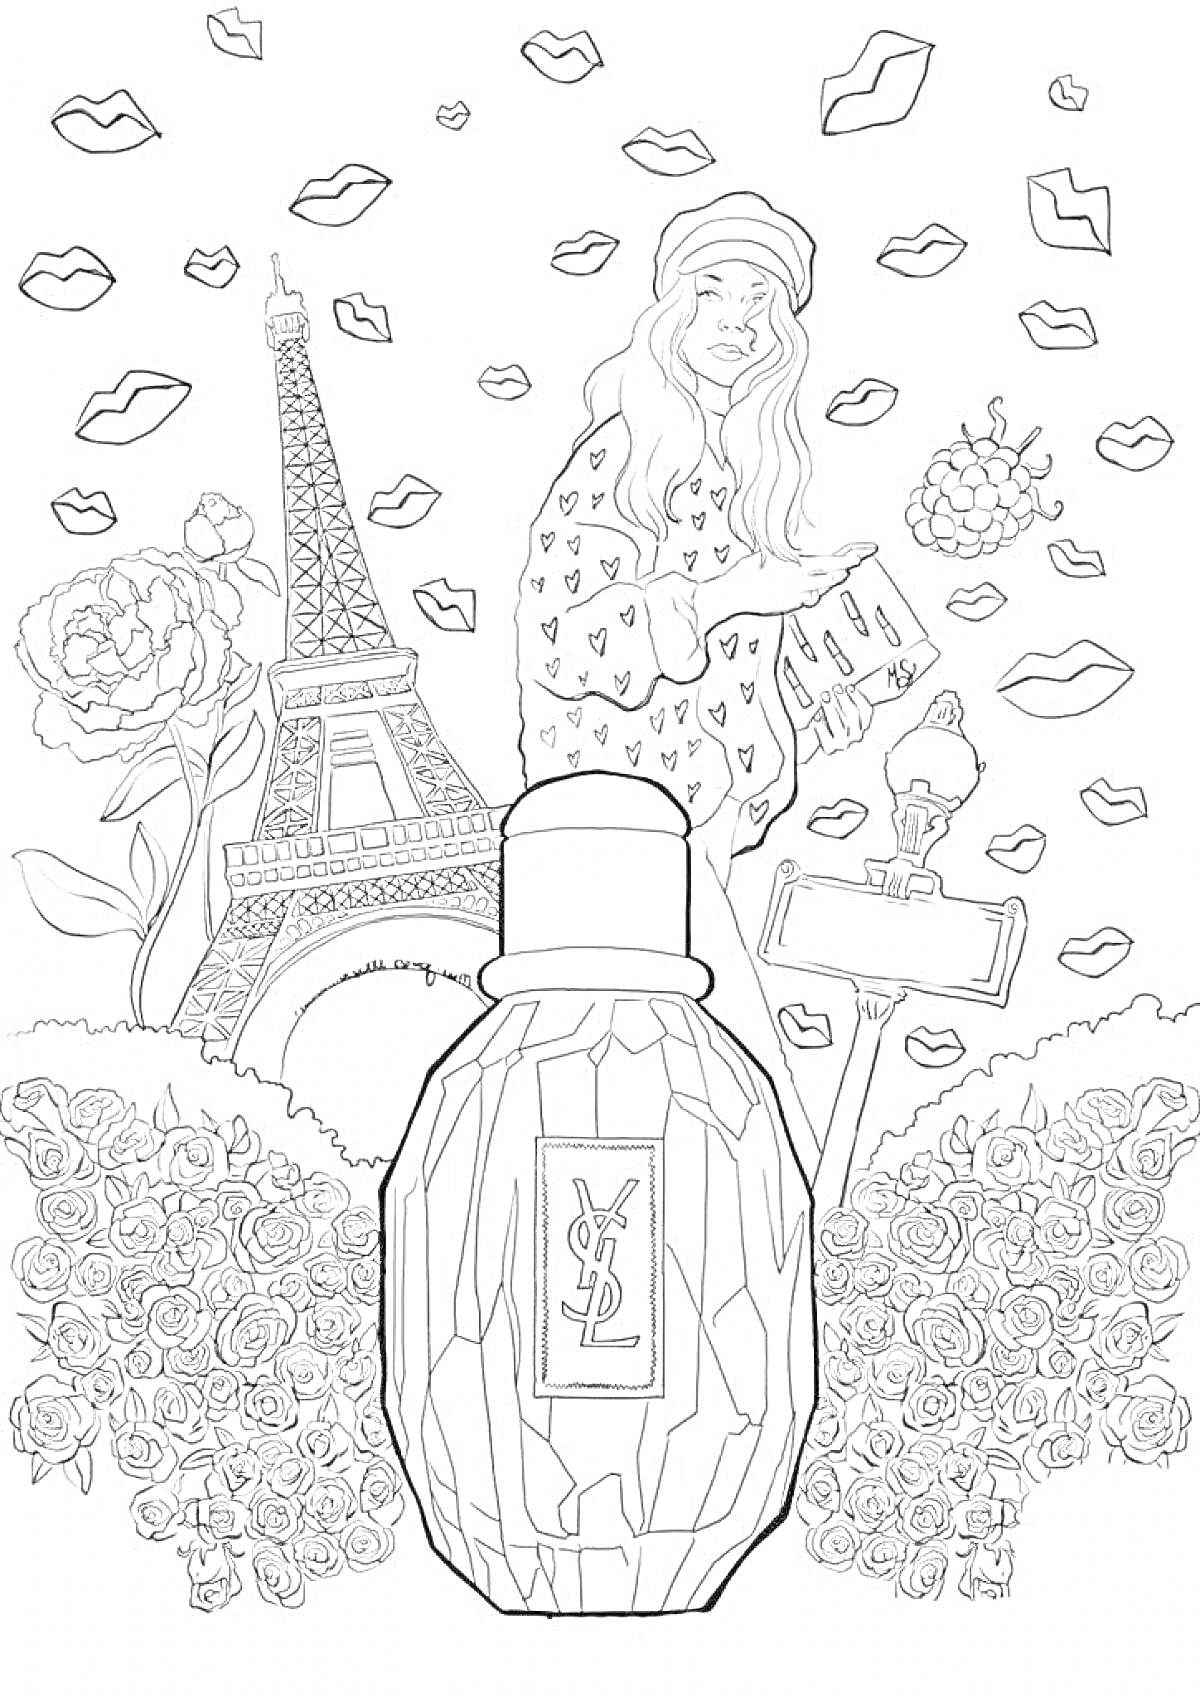 Раскраска Парижская мечта - Эйфелева башня, девушка, духи, розы, губы